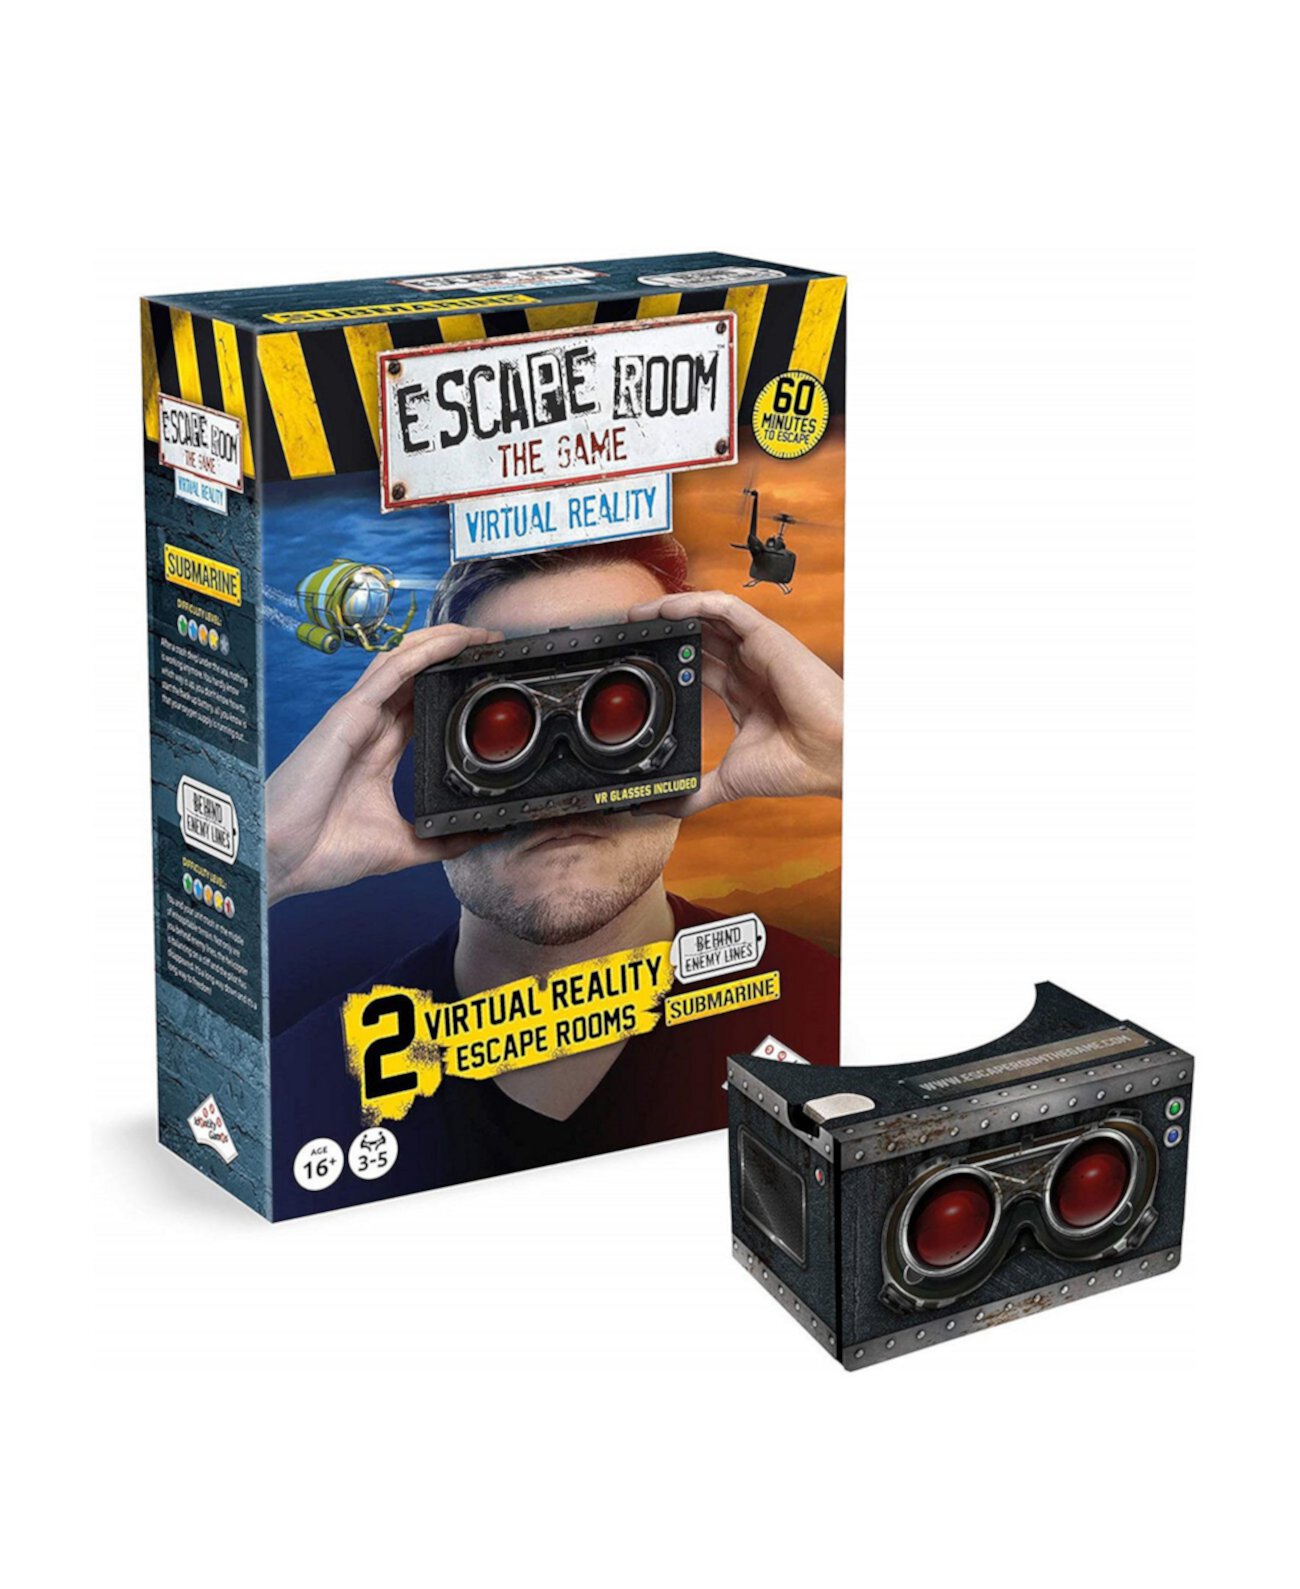 Escape Room Игра Виртуальная реальность с 2 квестами Identity Games